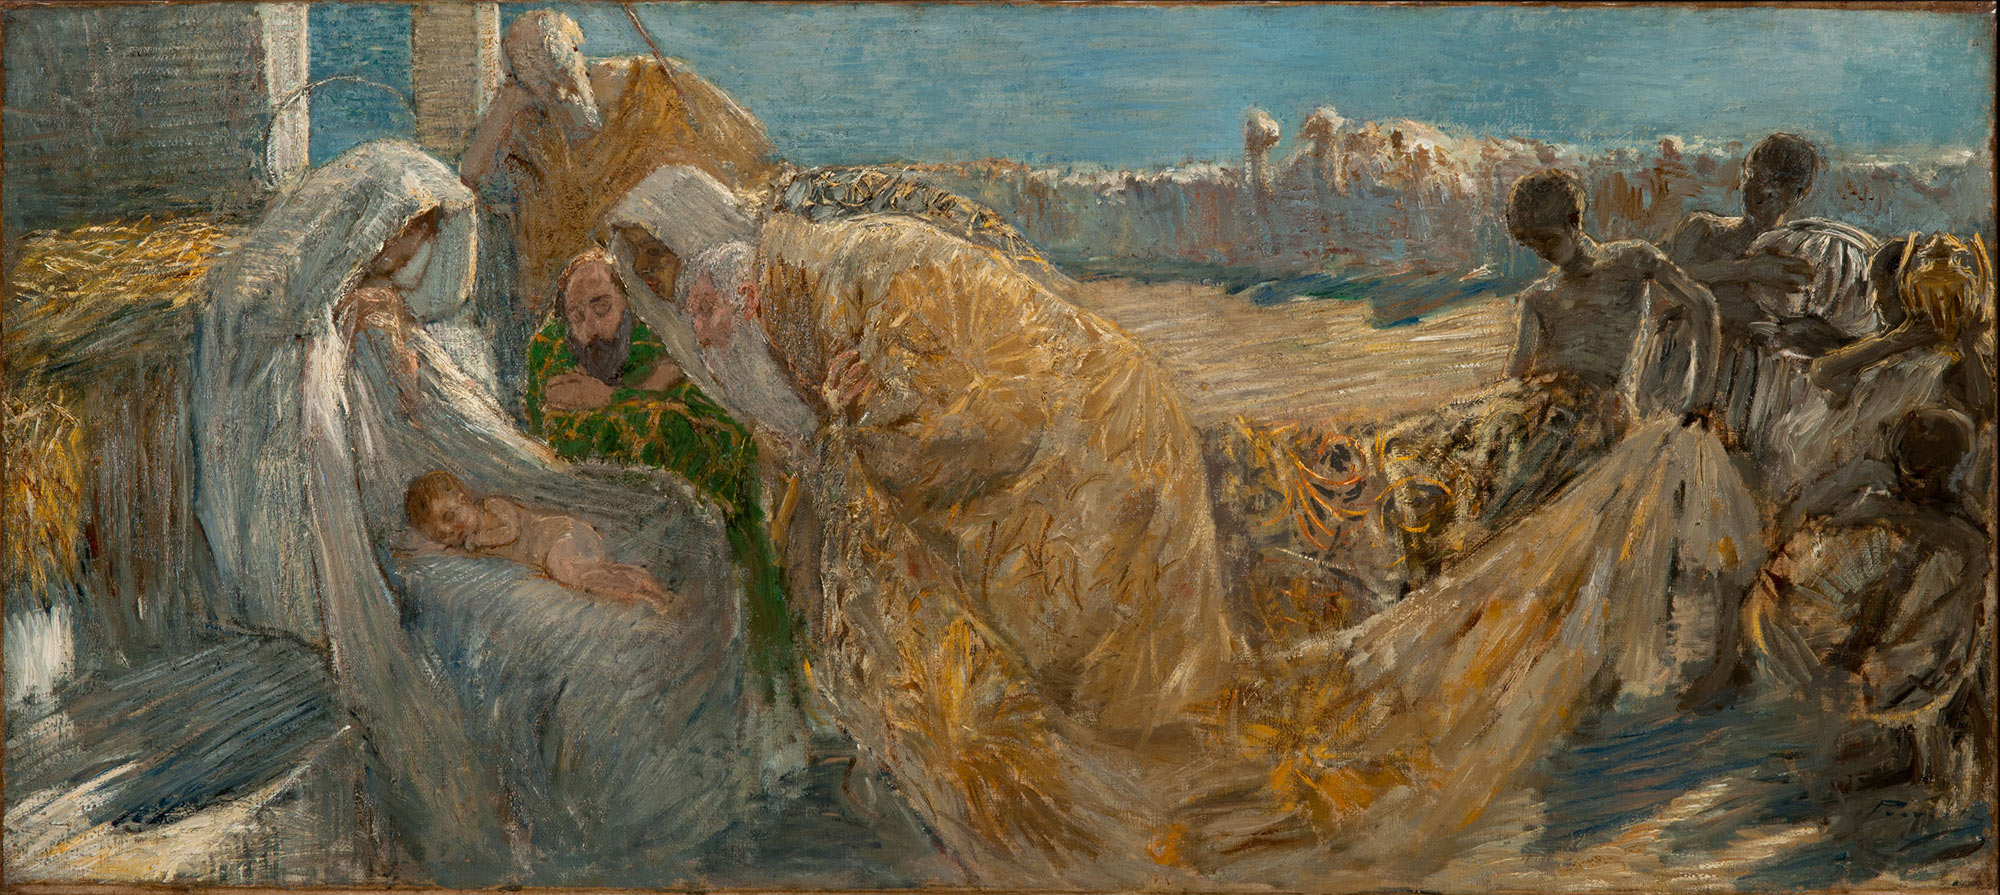 Gaetano Previati, Adorazione dei Magi (1892; olio su tela, 58,5 x 131 cm; Tortona, Museo Il Divisionismo)
